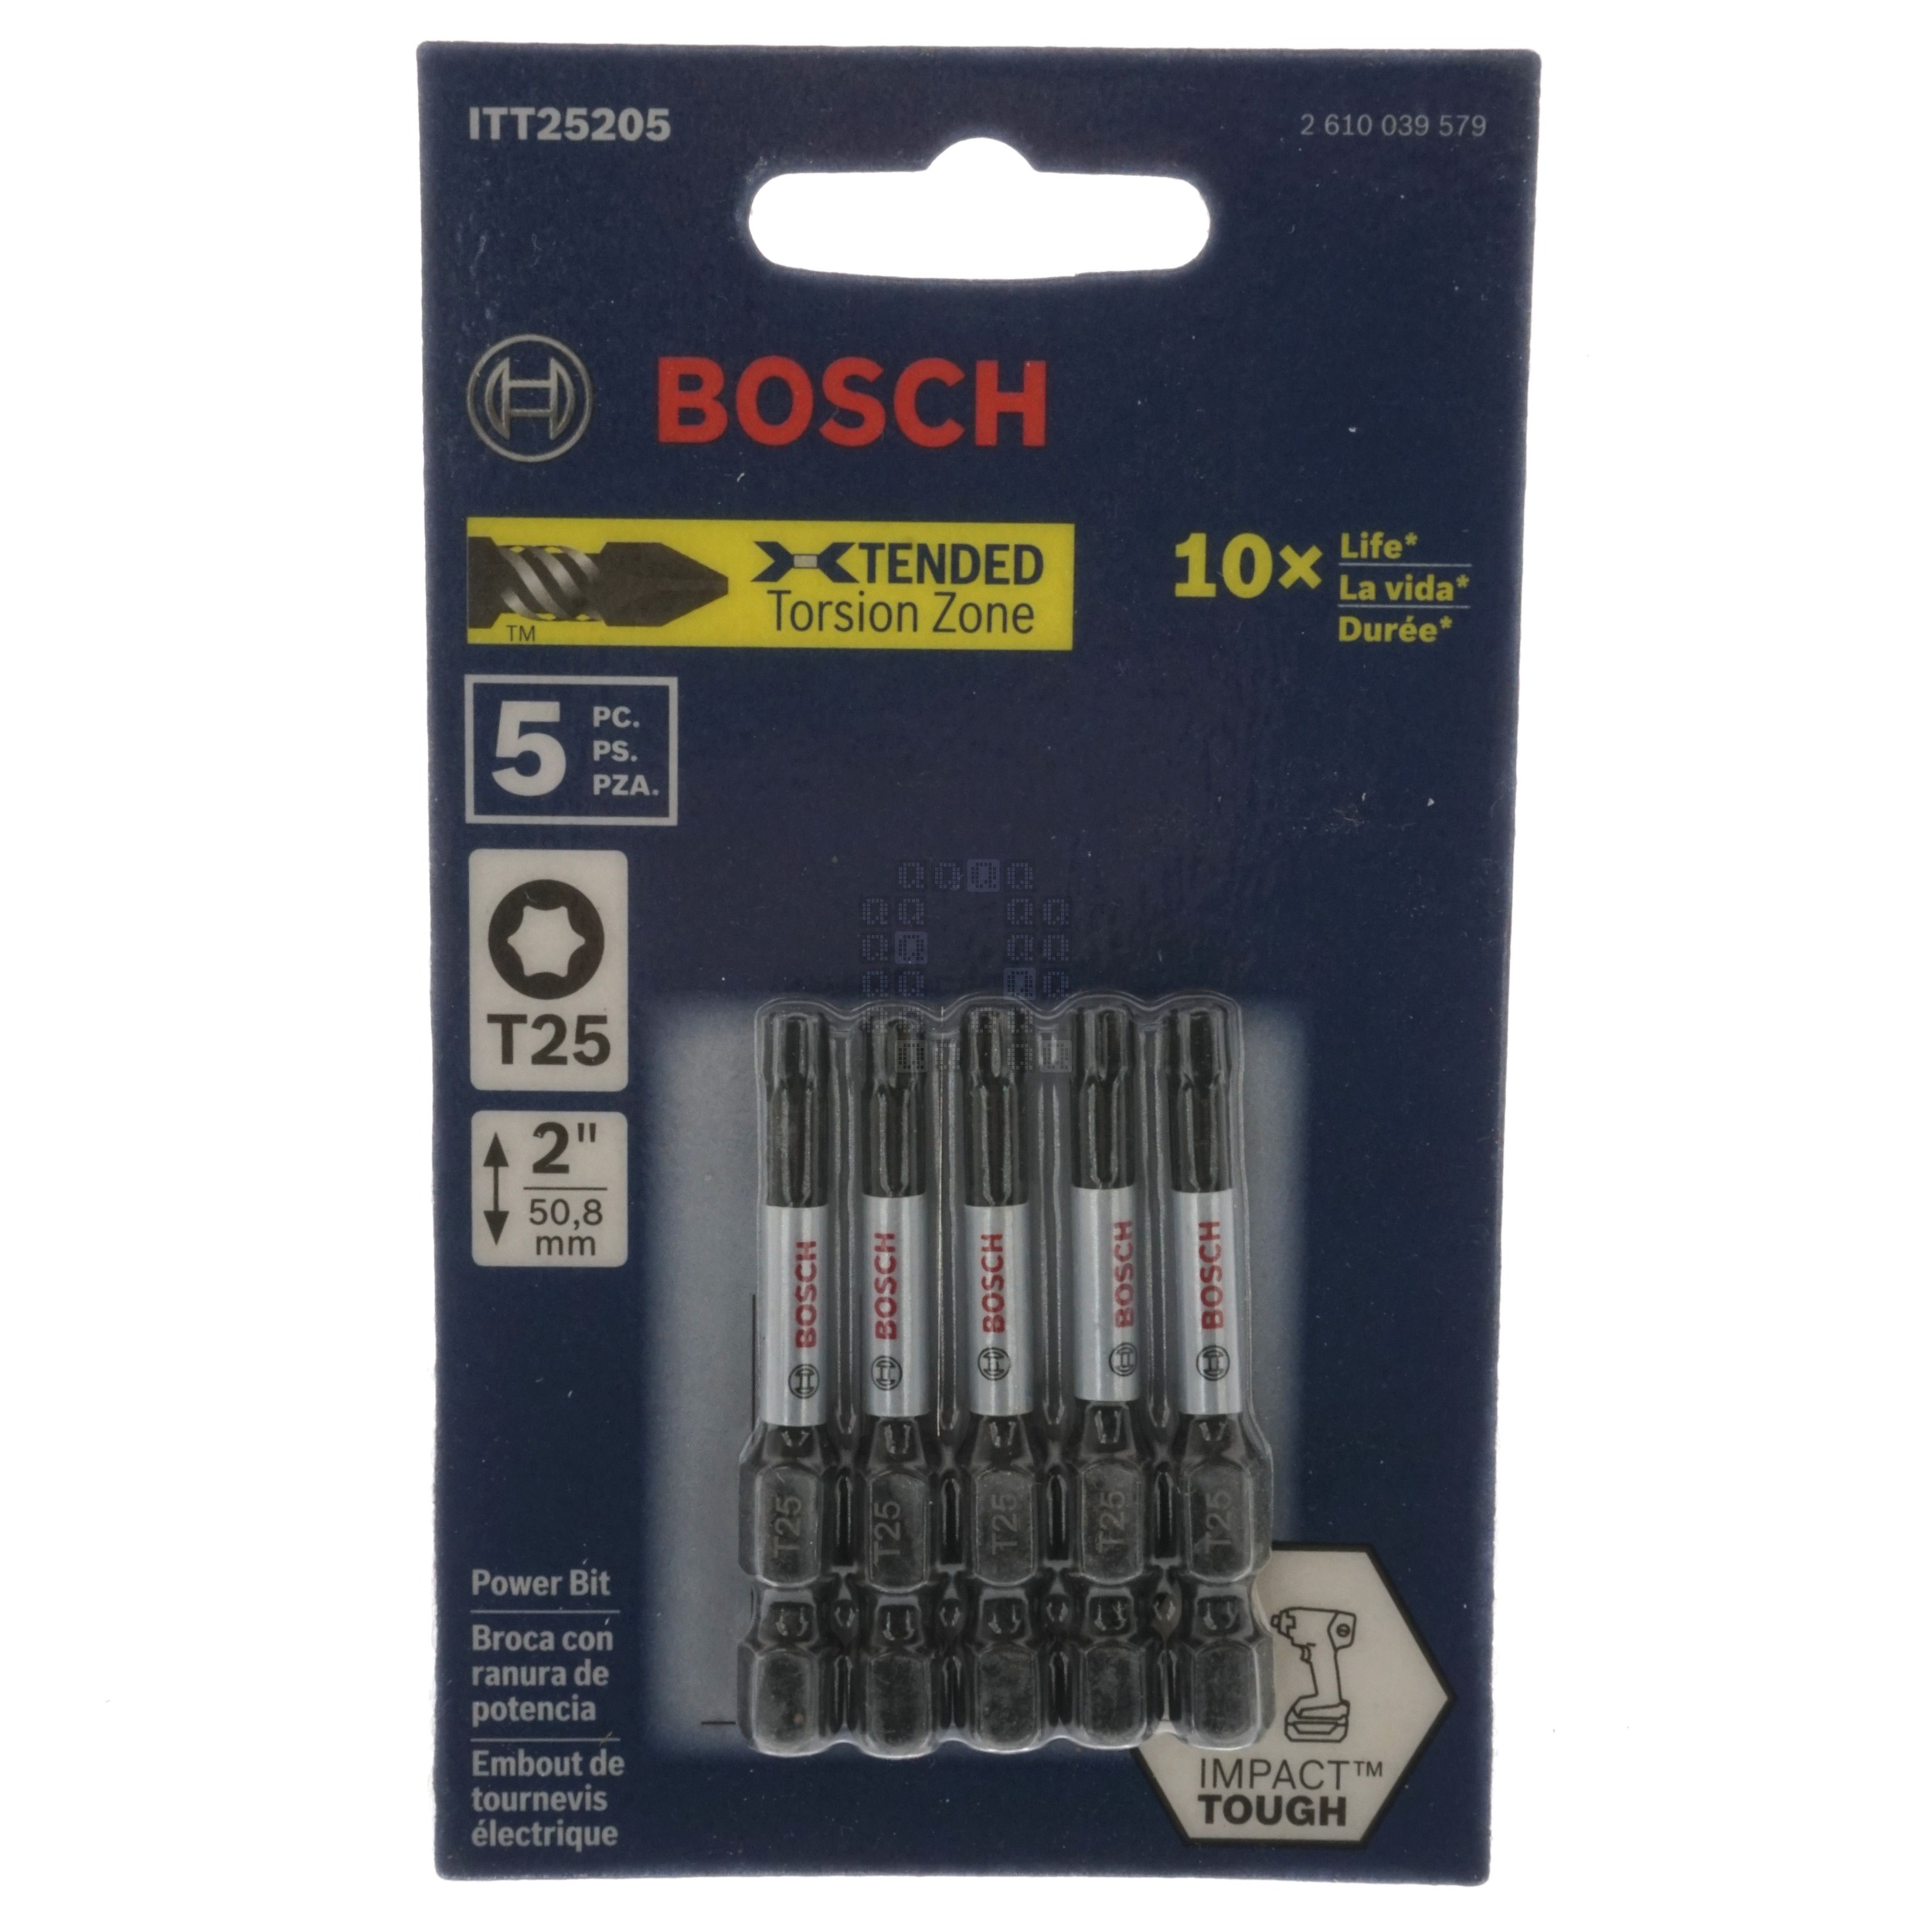 Bosch 2610039579 ITT25205 Impact Tough T25 TORX Power Bit, 2" Length, 5-Pack